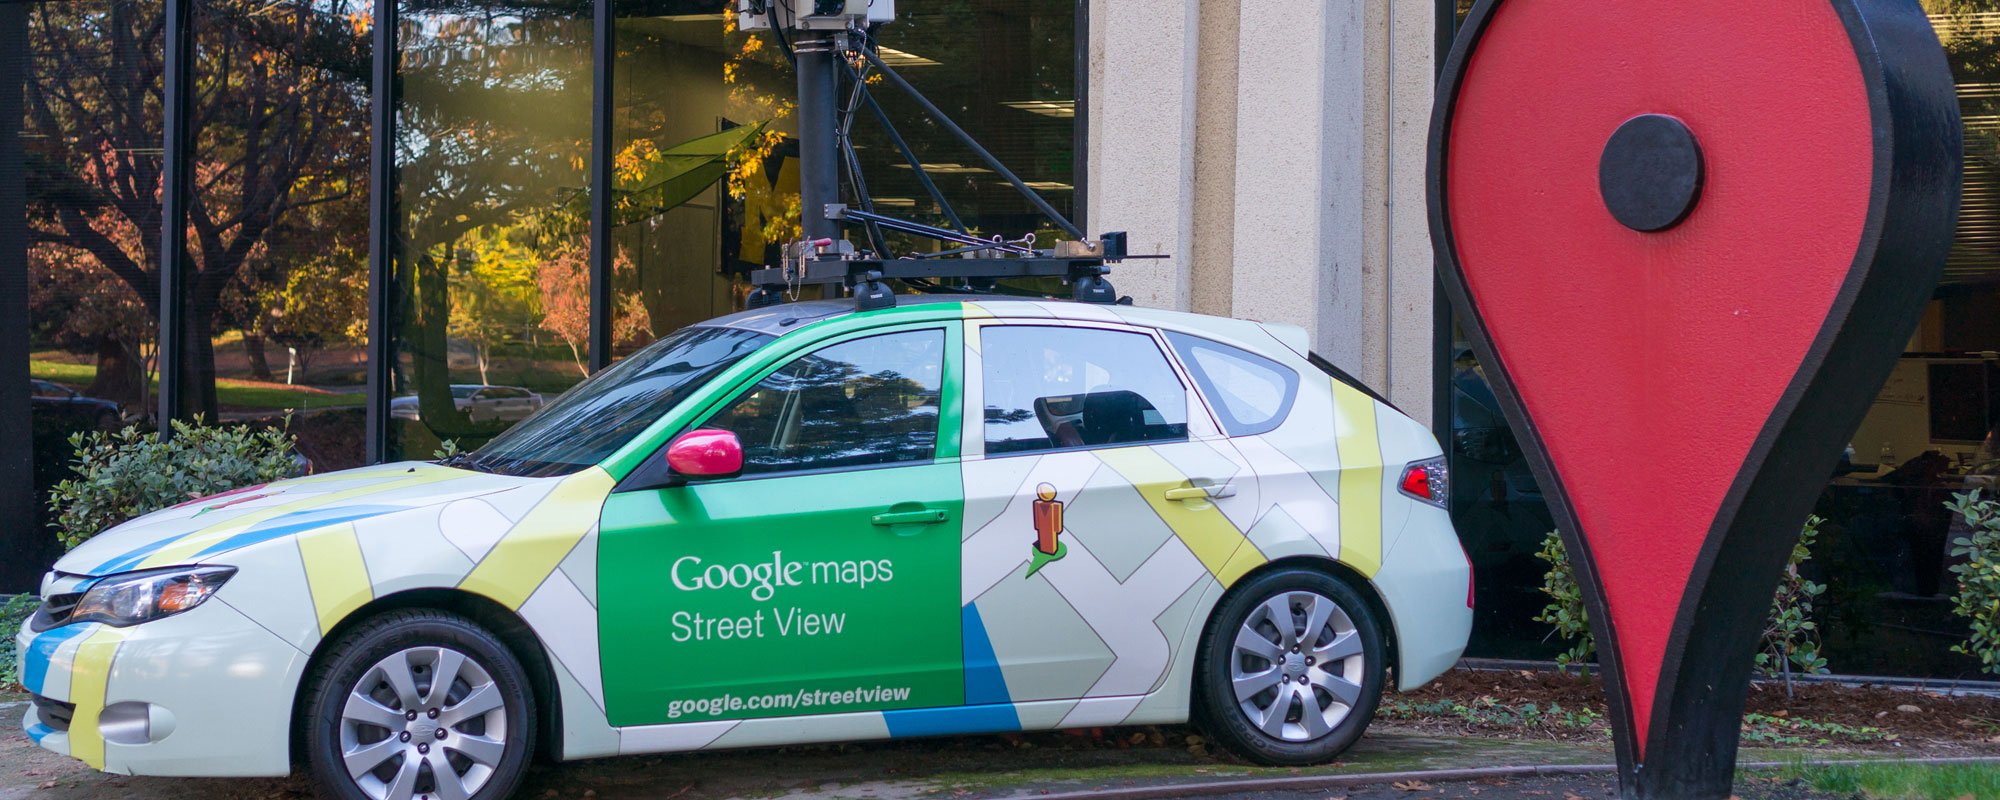 voiture google street view